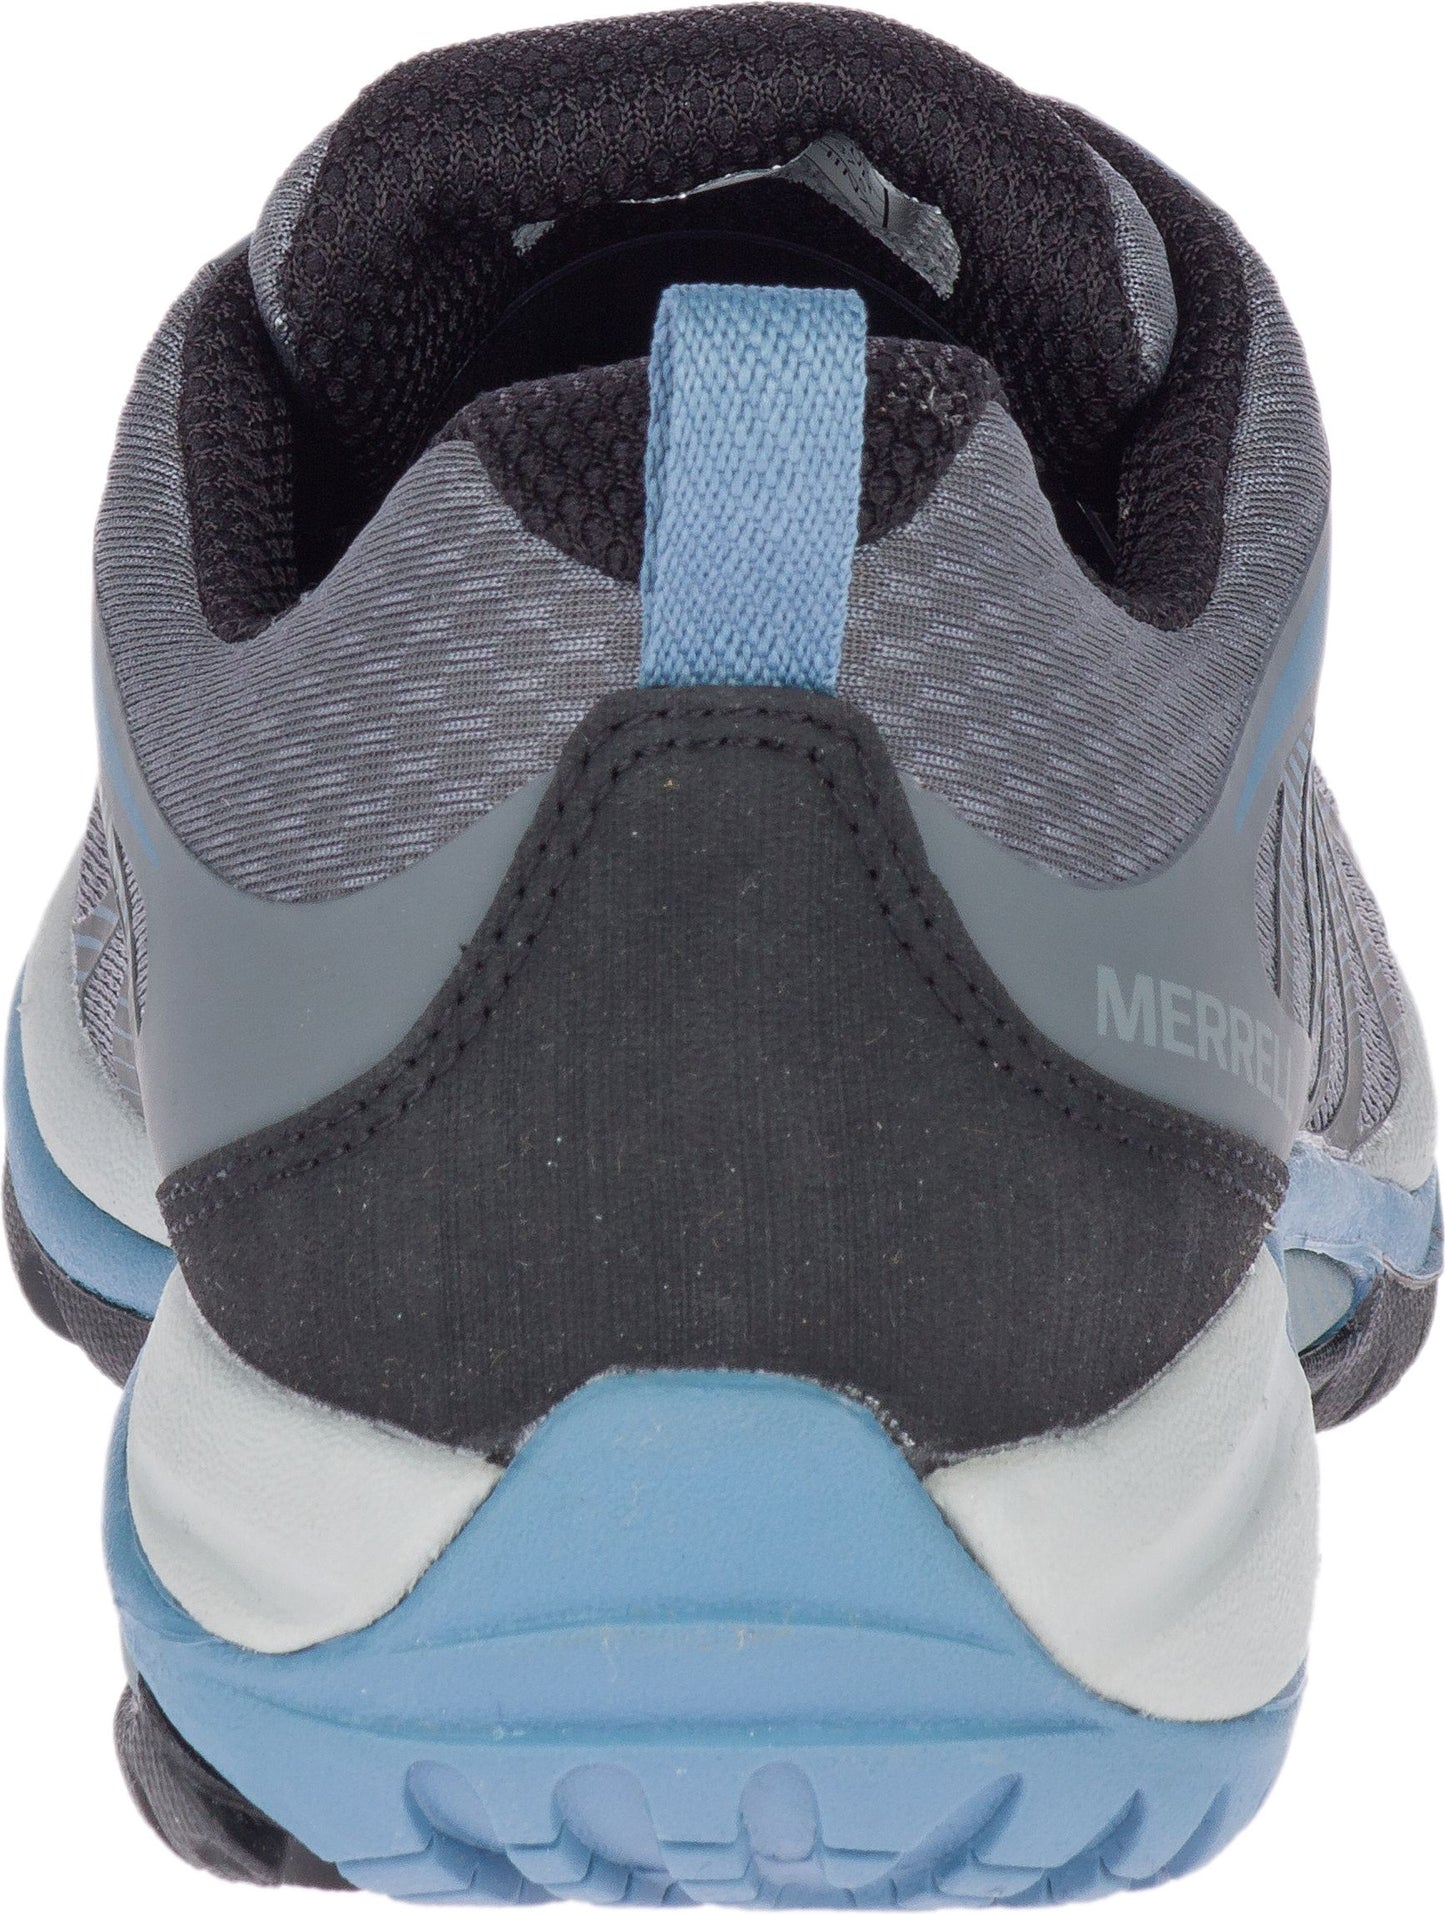 Merrell Shoes Siren Edge 3 Waterproof Rock